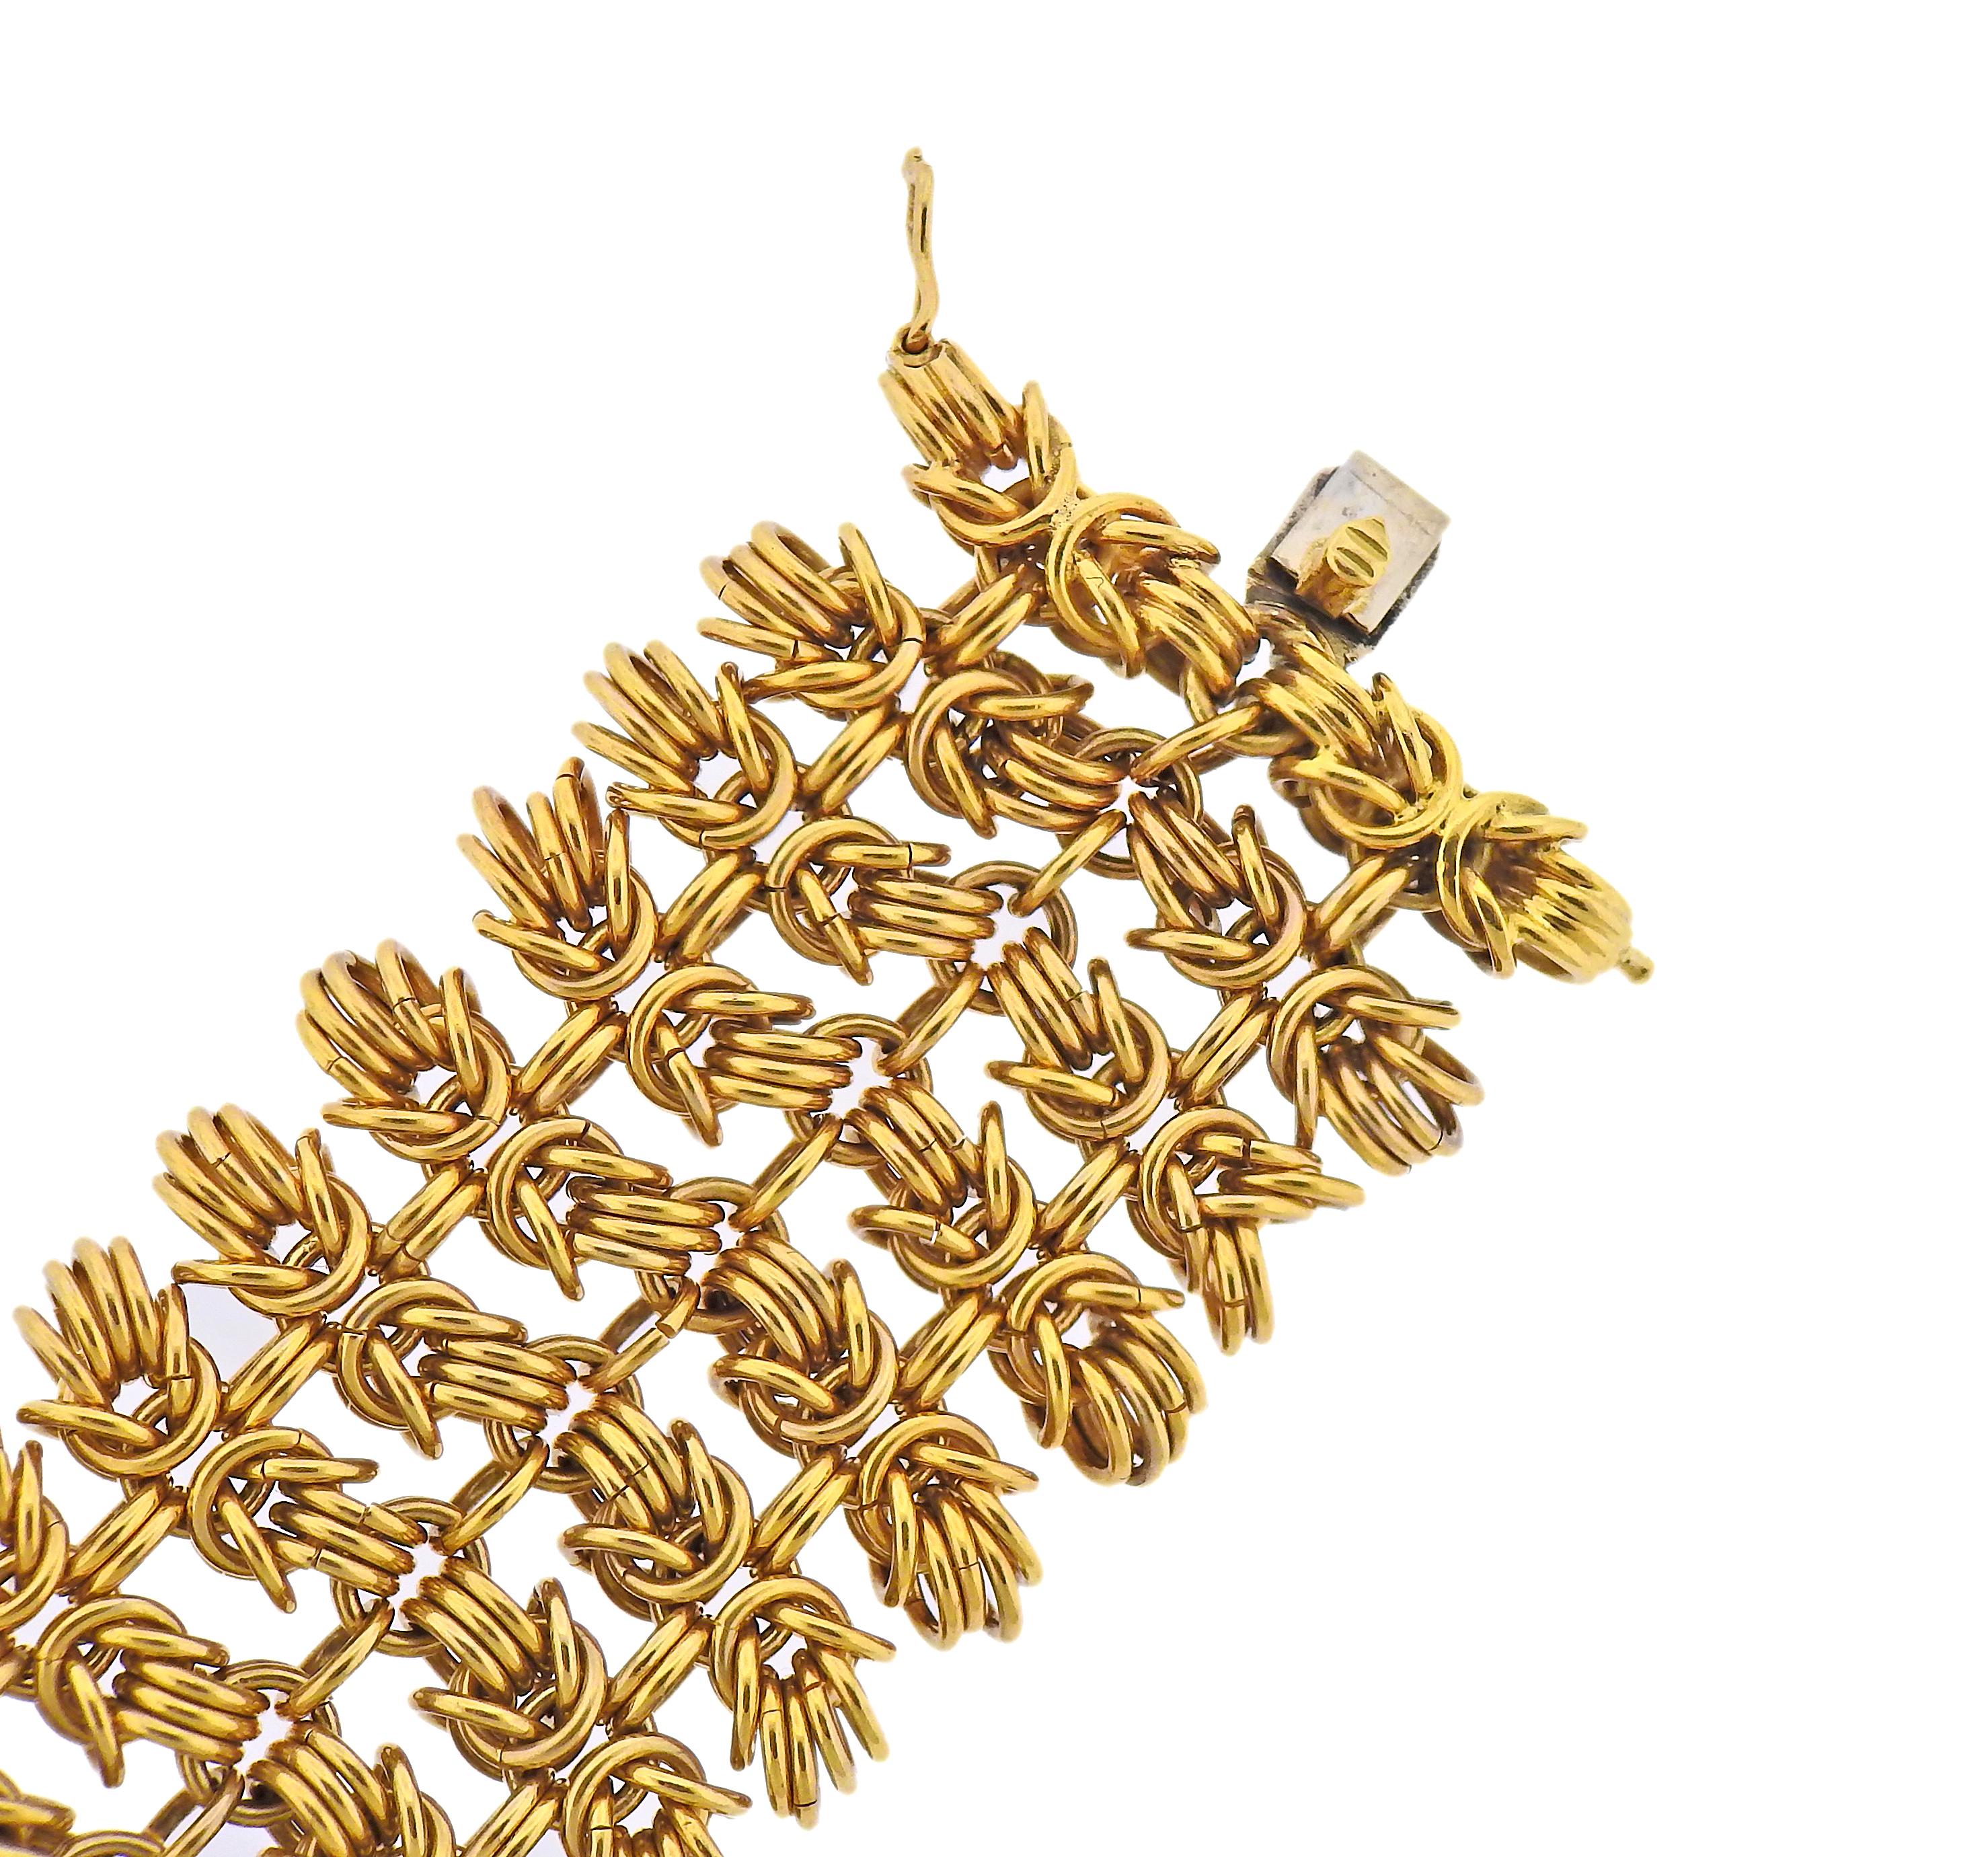 Armband aus 18-karätigem Gold von Bvlgari mit ineinandergreifenden Herkulesknoten. Das Armband ist 7 5/8